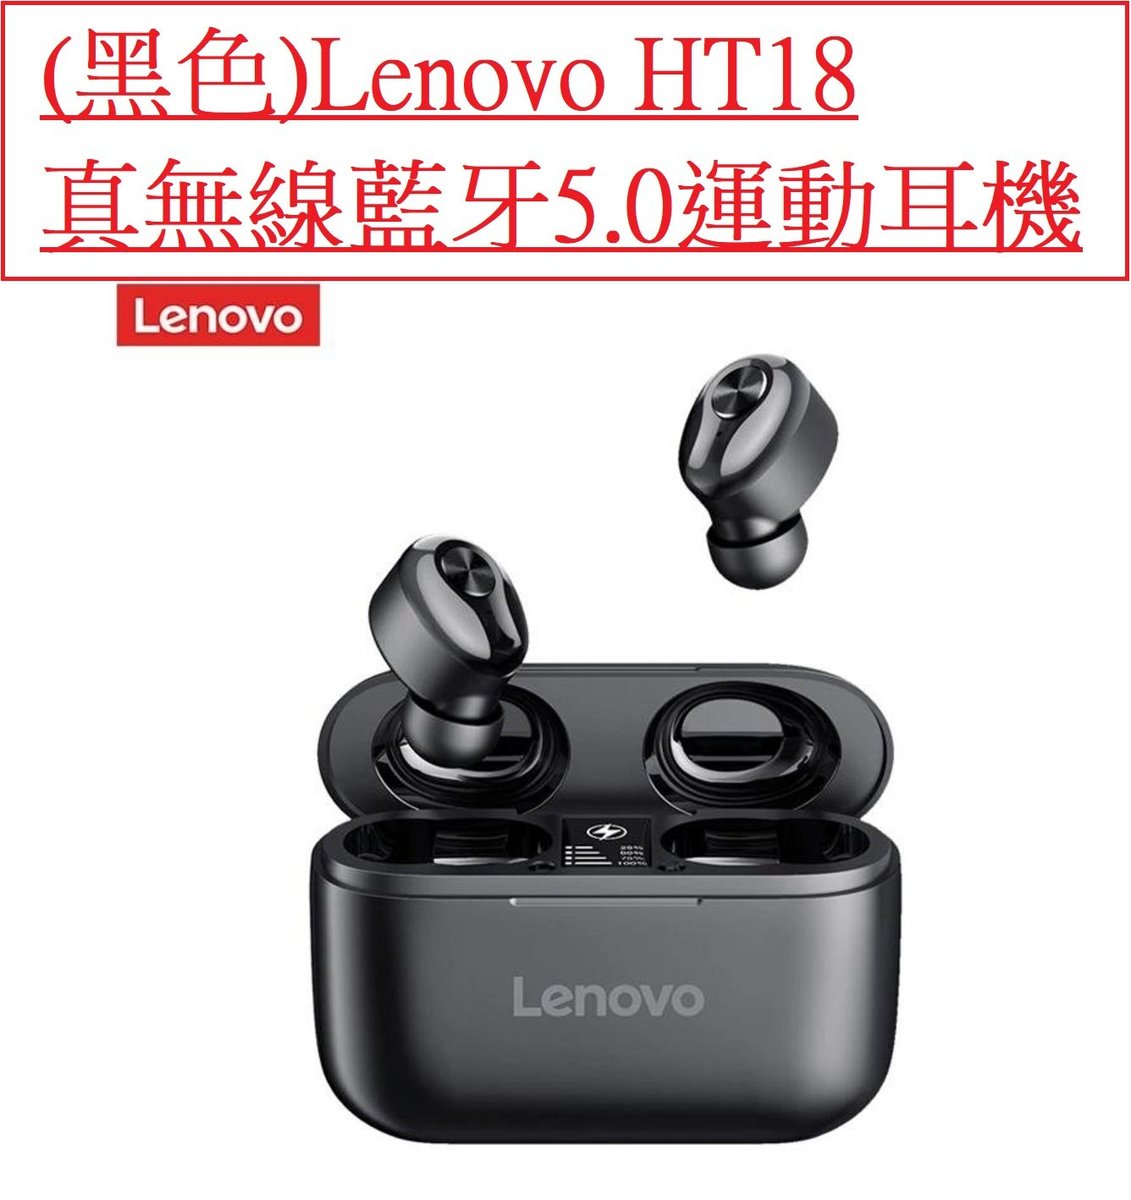 聯想 黑色 Lenovo Ht18 真無線藍牙5 0運動耳機true Wireless Stereo Earbuds Case Battery 1000mah 無線藍芽耳機無線耳機極致音質迷你雙耳無線強勁低音雙耳通話聯想充電盒